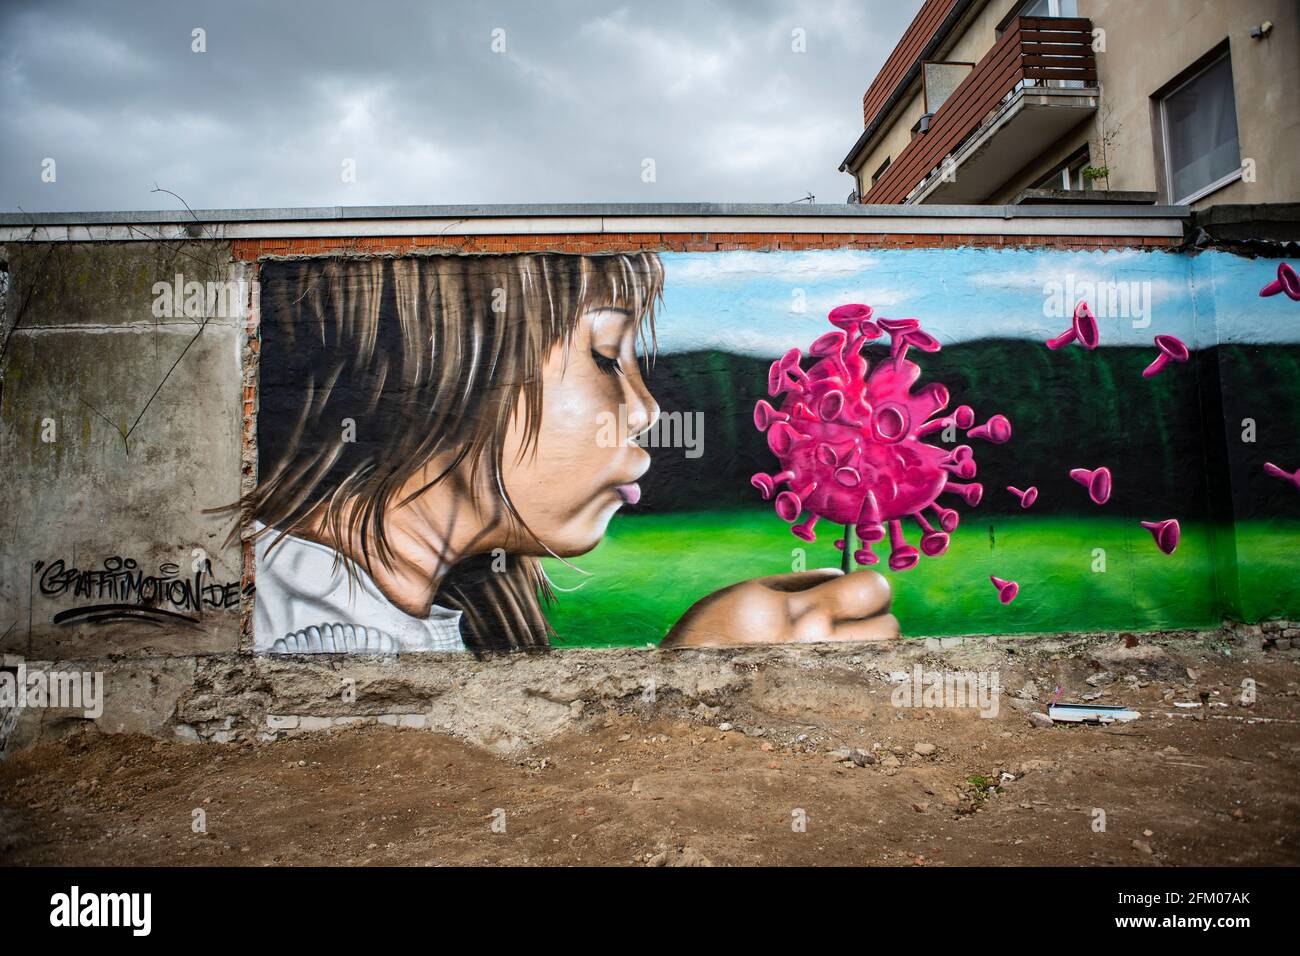 Ein Graffiti an einer alten Mauer zeigt ein Mädchen, welches wie bei einer Pusteblume ein Coronavirus anpustet, welches dann auseinander fliegt. Ein s Foto de stock